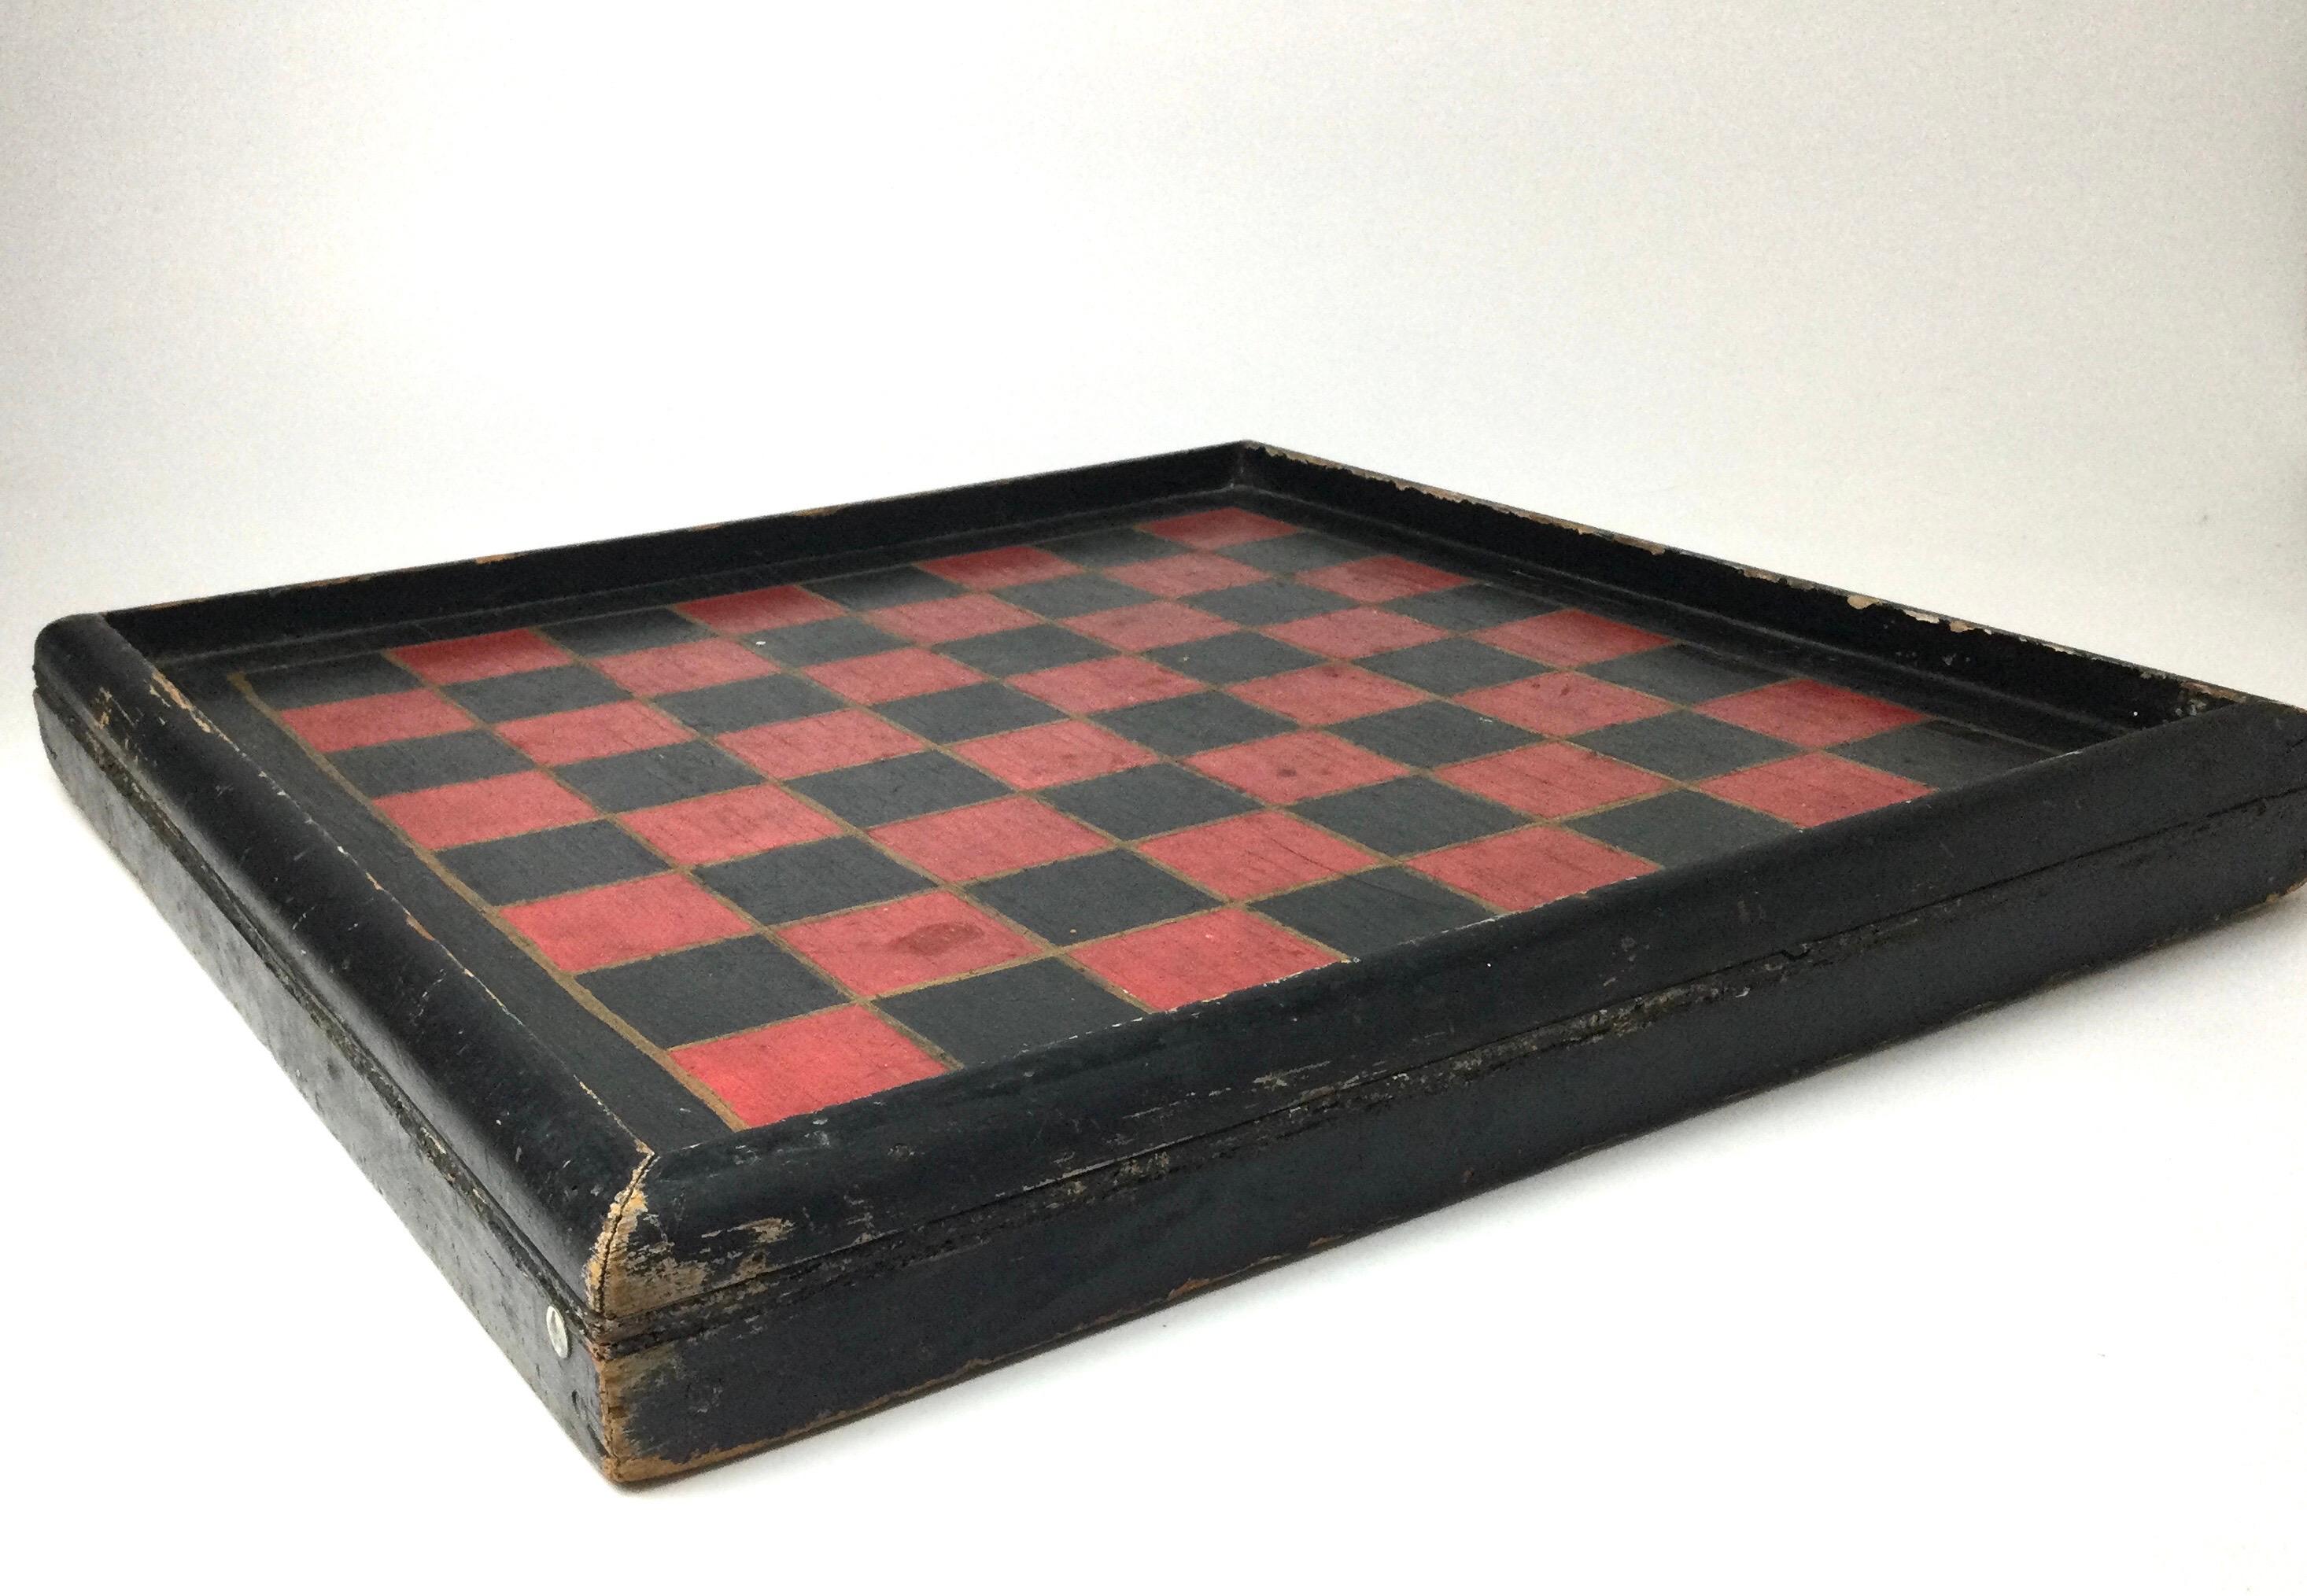 Plateau de jeu du 19ème siècle en surface d'origine peint en rouge et noir. Peint à la main en rouge et noir avec des lignes dorées entre les cases. Bel état ancien avec une usure appropriée à l'âge de la peinture. 20